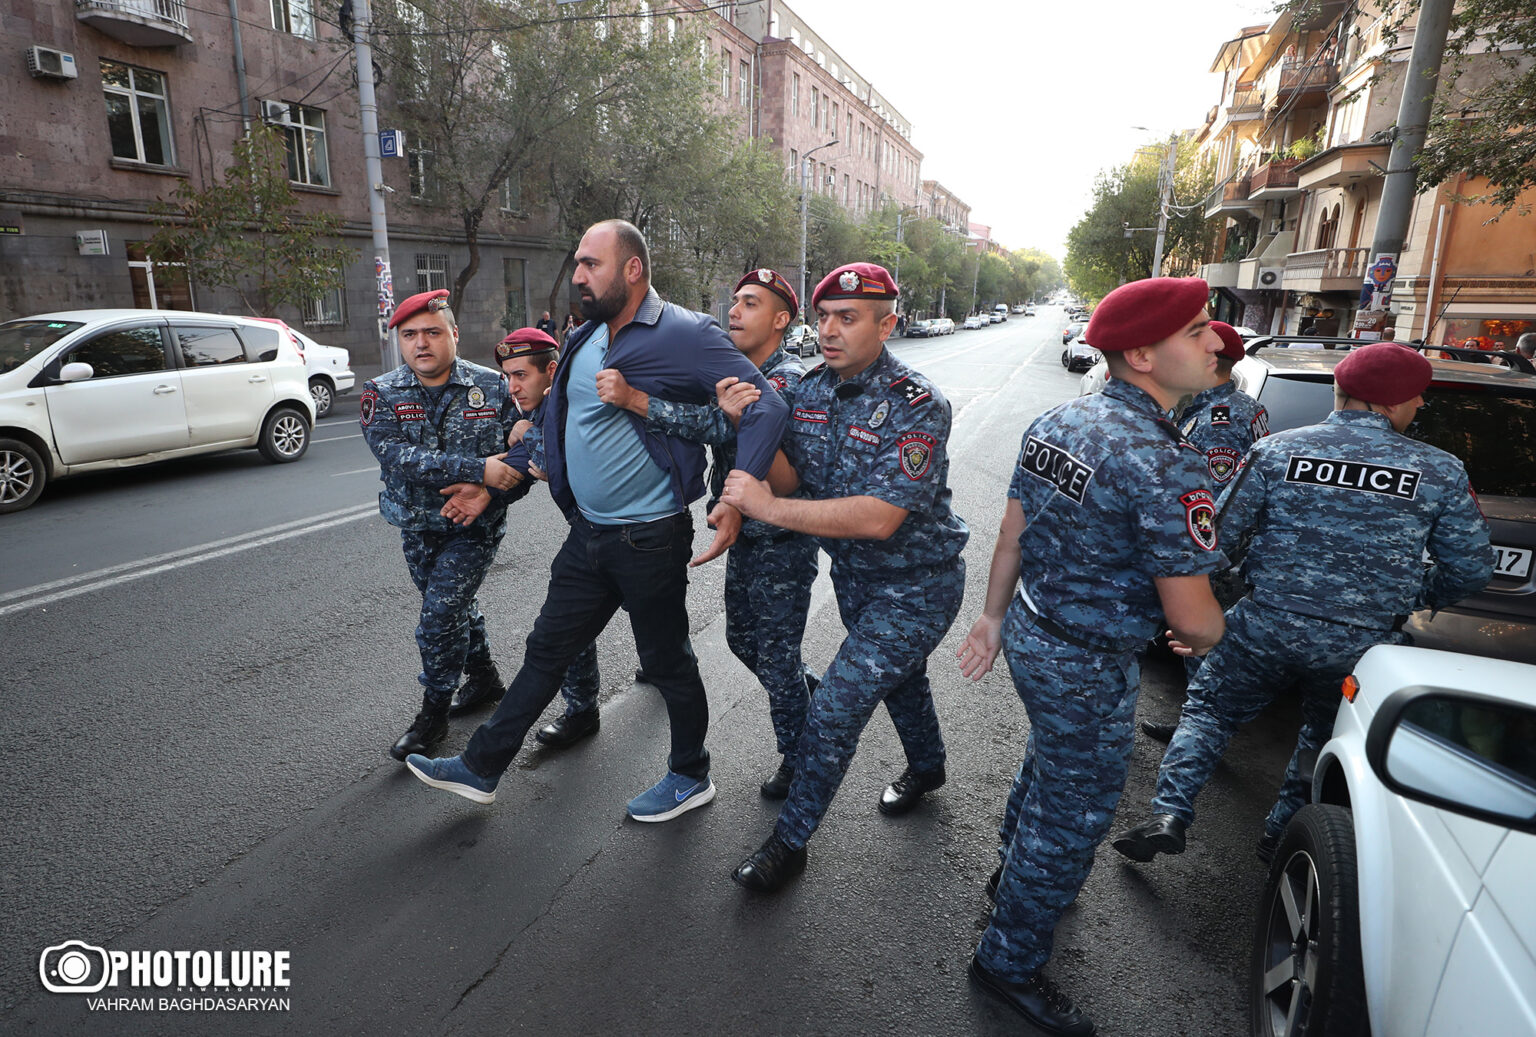 Երևանում վաղ առավոտից սկսվել են անհնազանդության ակցիաները